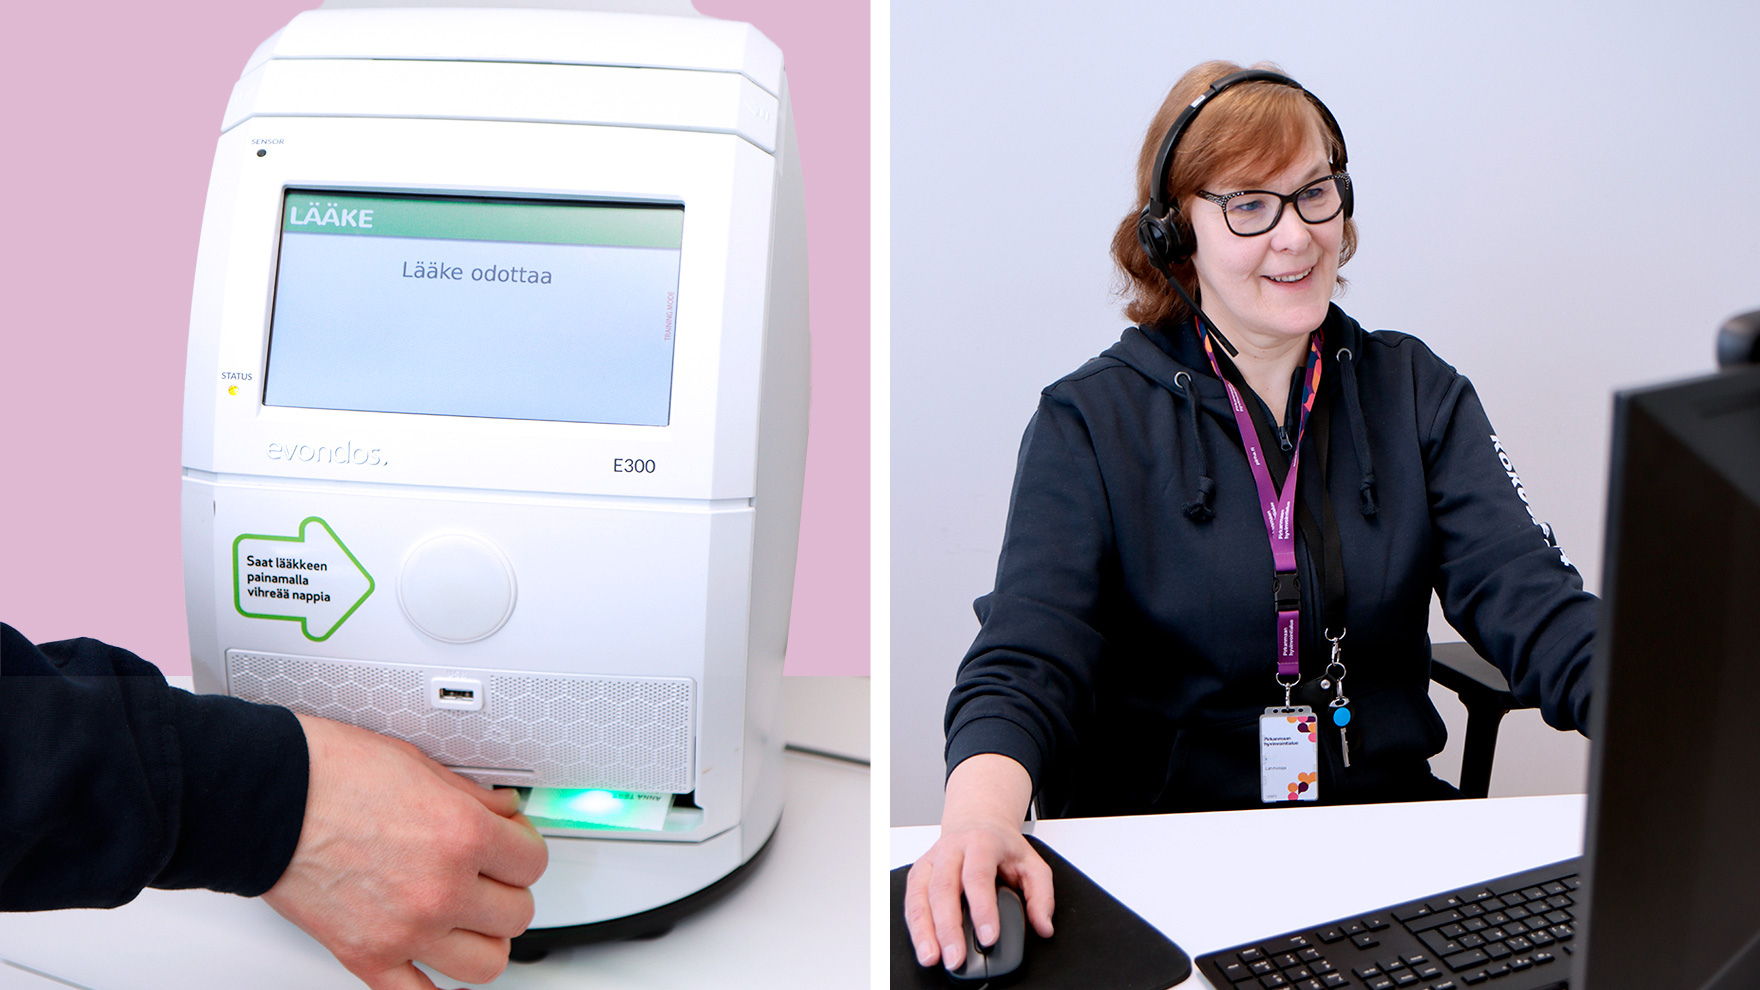 Vasemmalla kuva lääkeautomaatista ja kädestä joka ottaa automaatista lääkkeet. Oikealla kuva naisesta, jolla on sankakuulokkeet. Hän puhuu hymyillen ja katsoo tietokoneen ruutua.